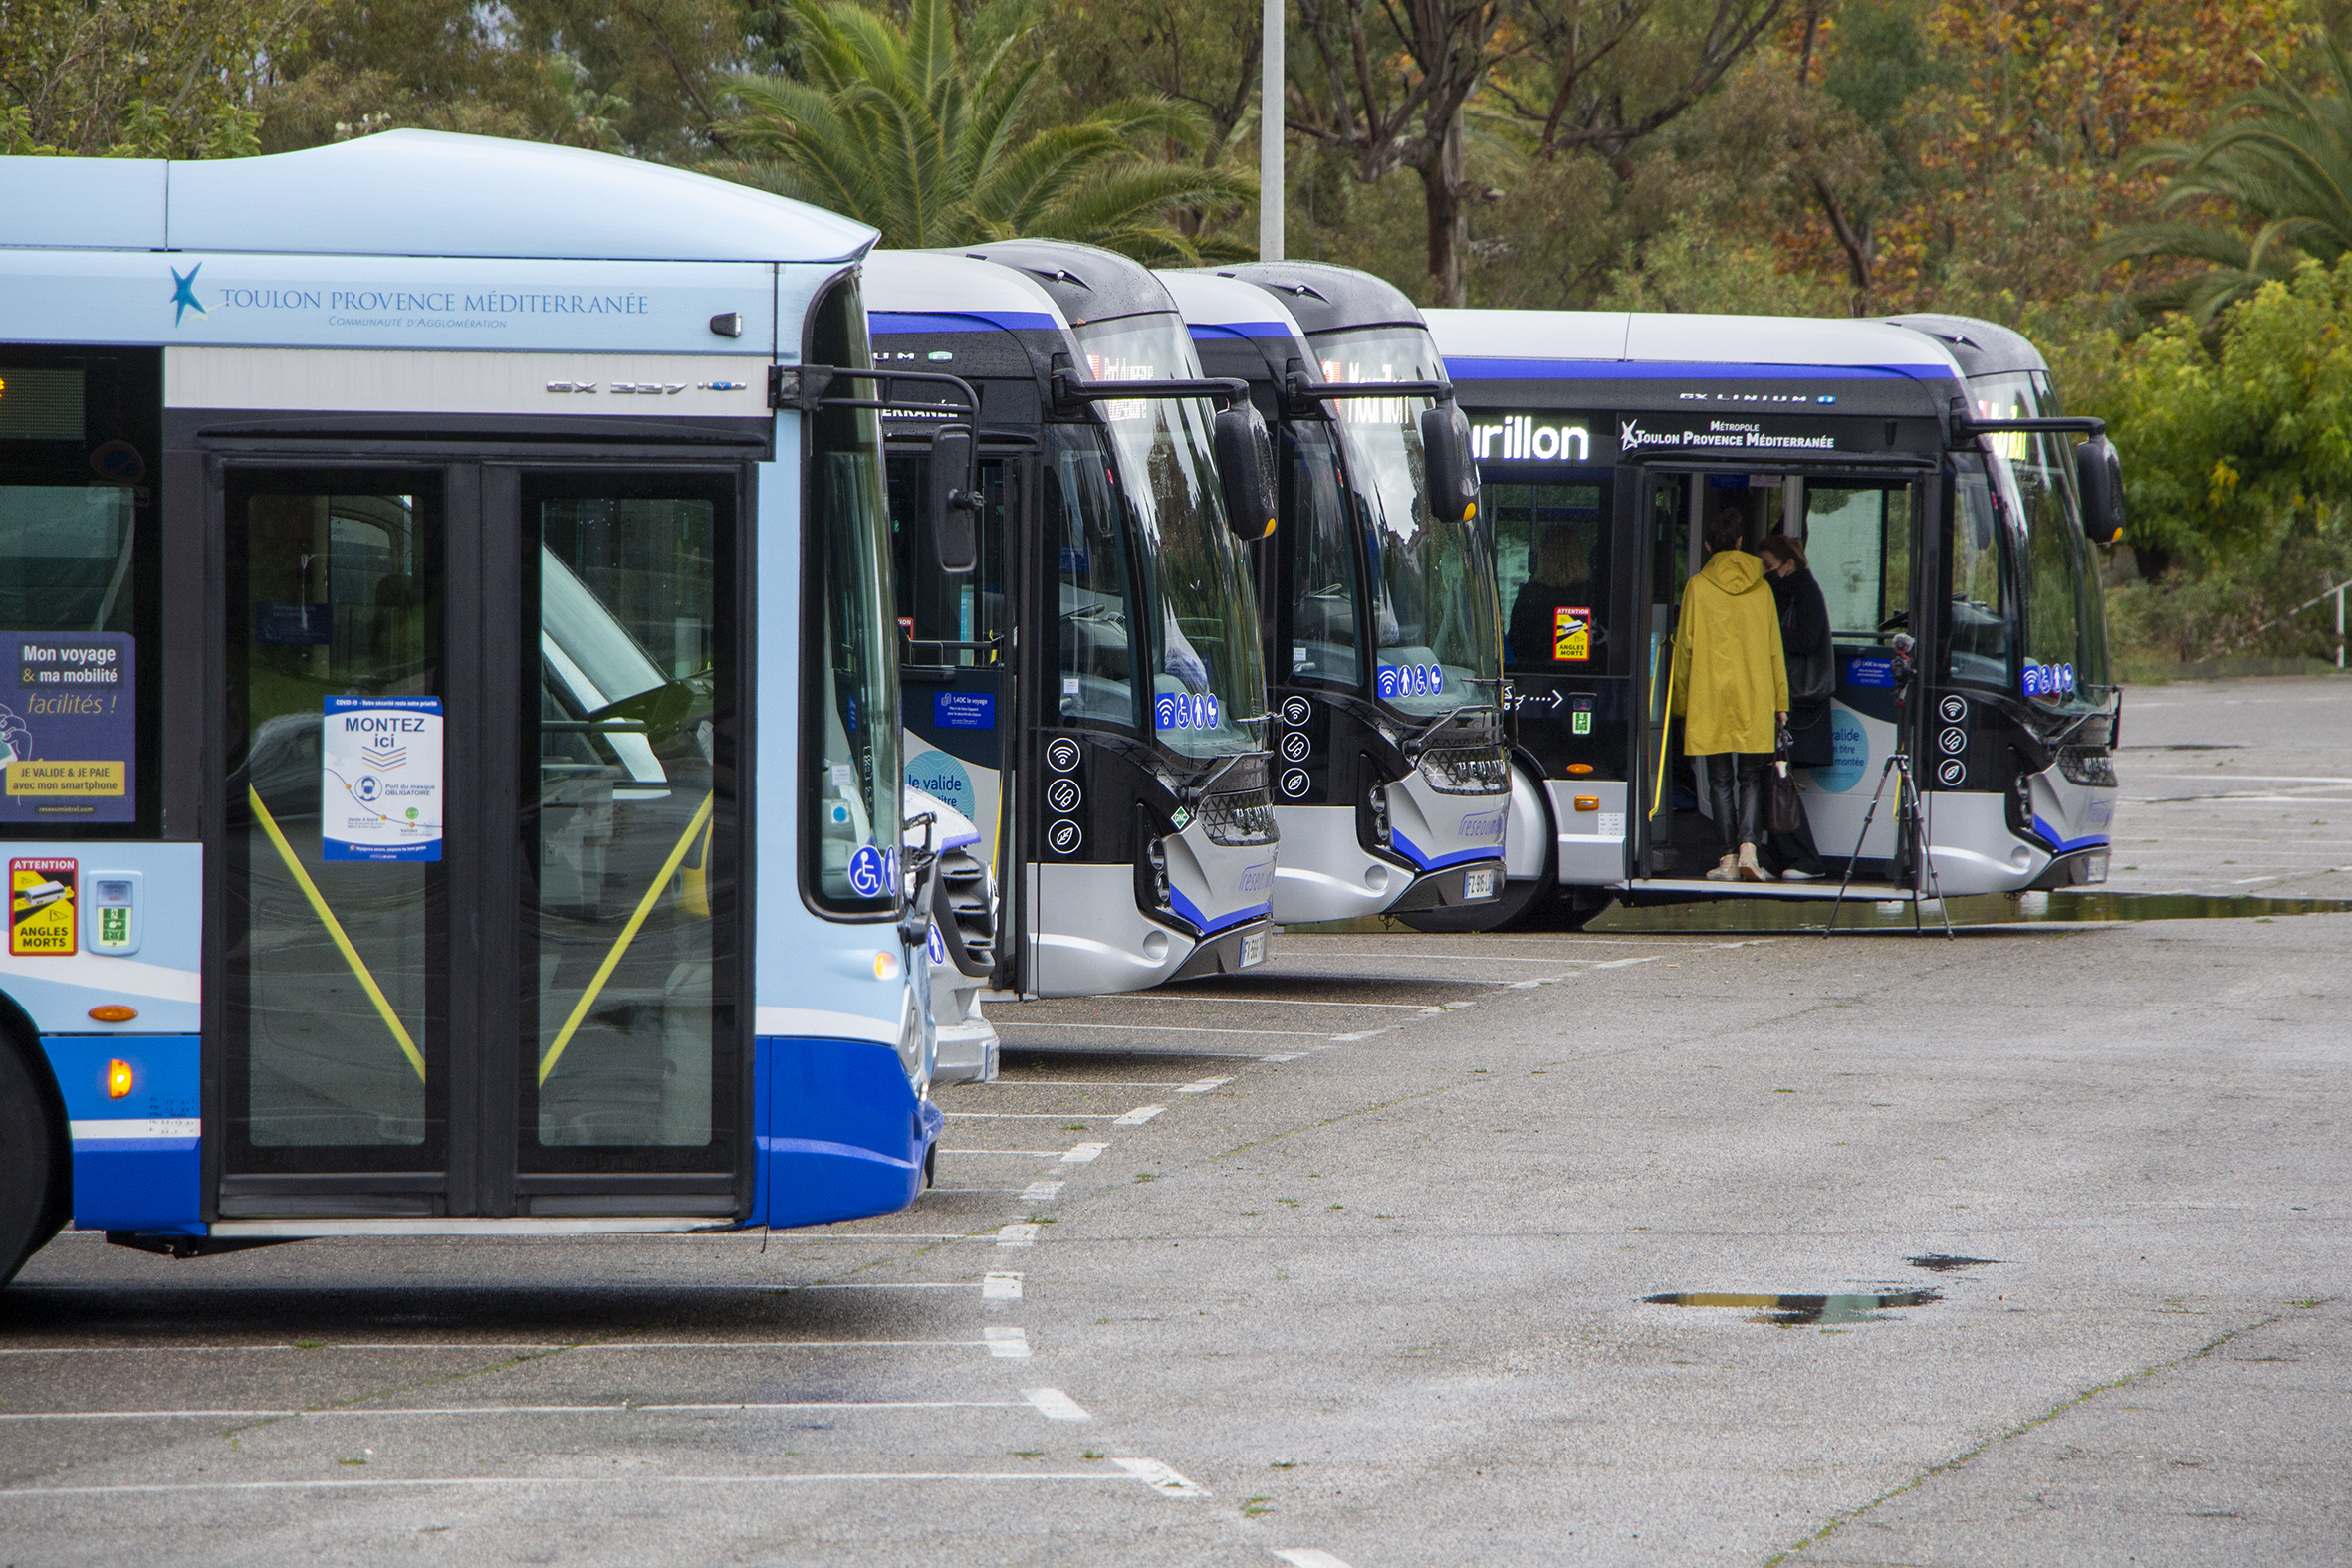 Les bus propre de Toulon